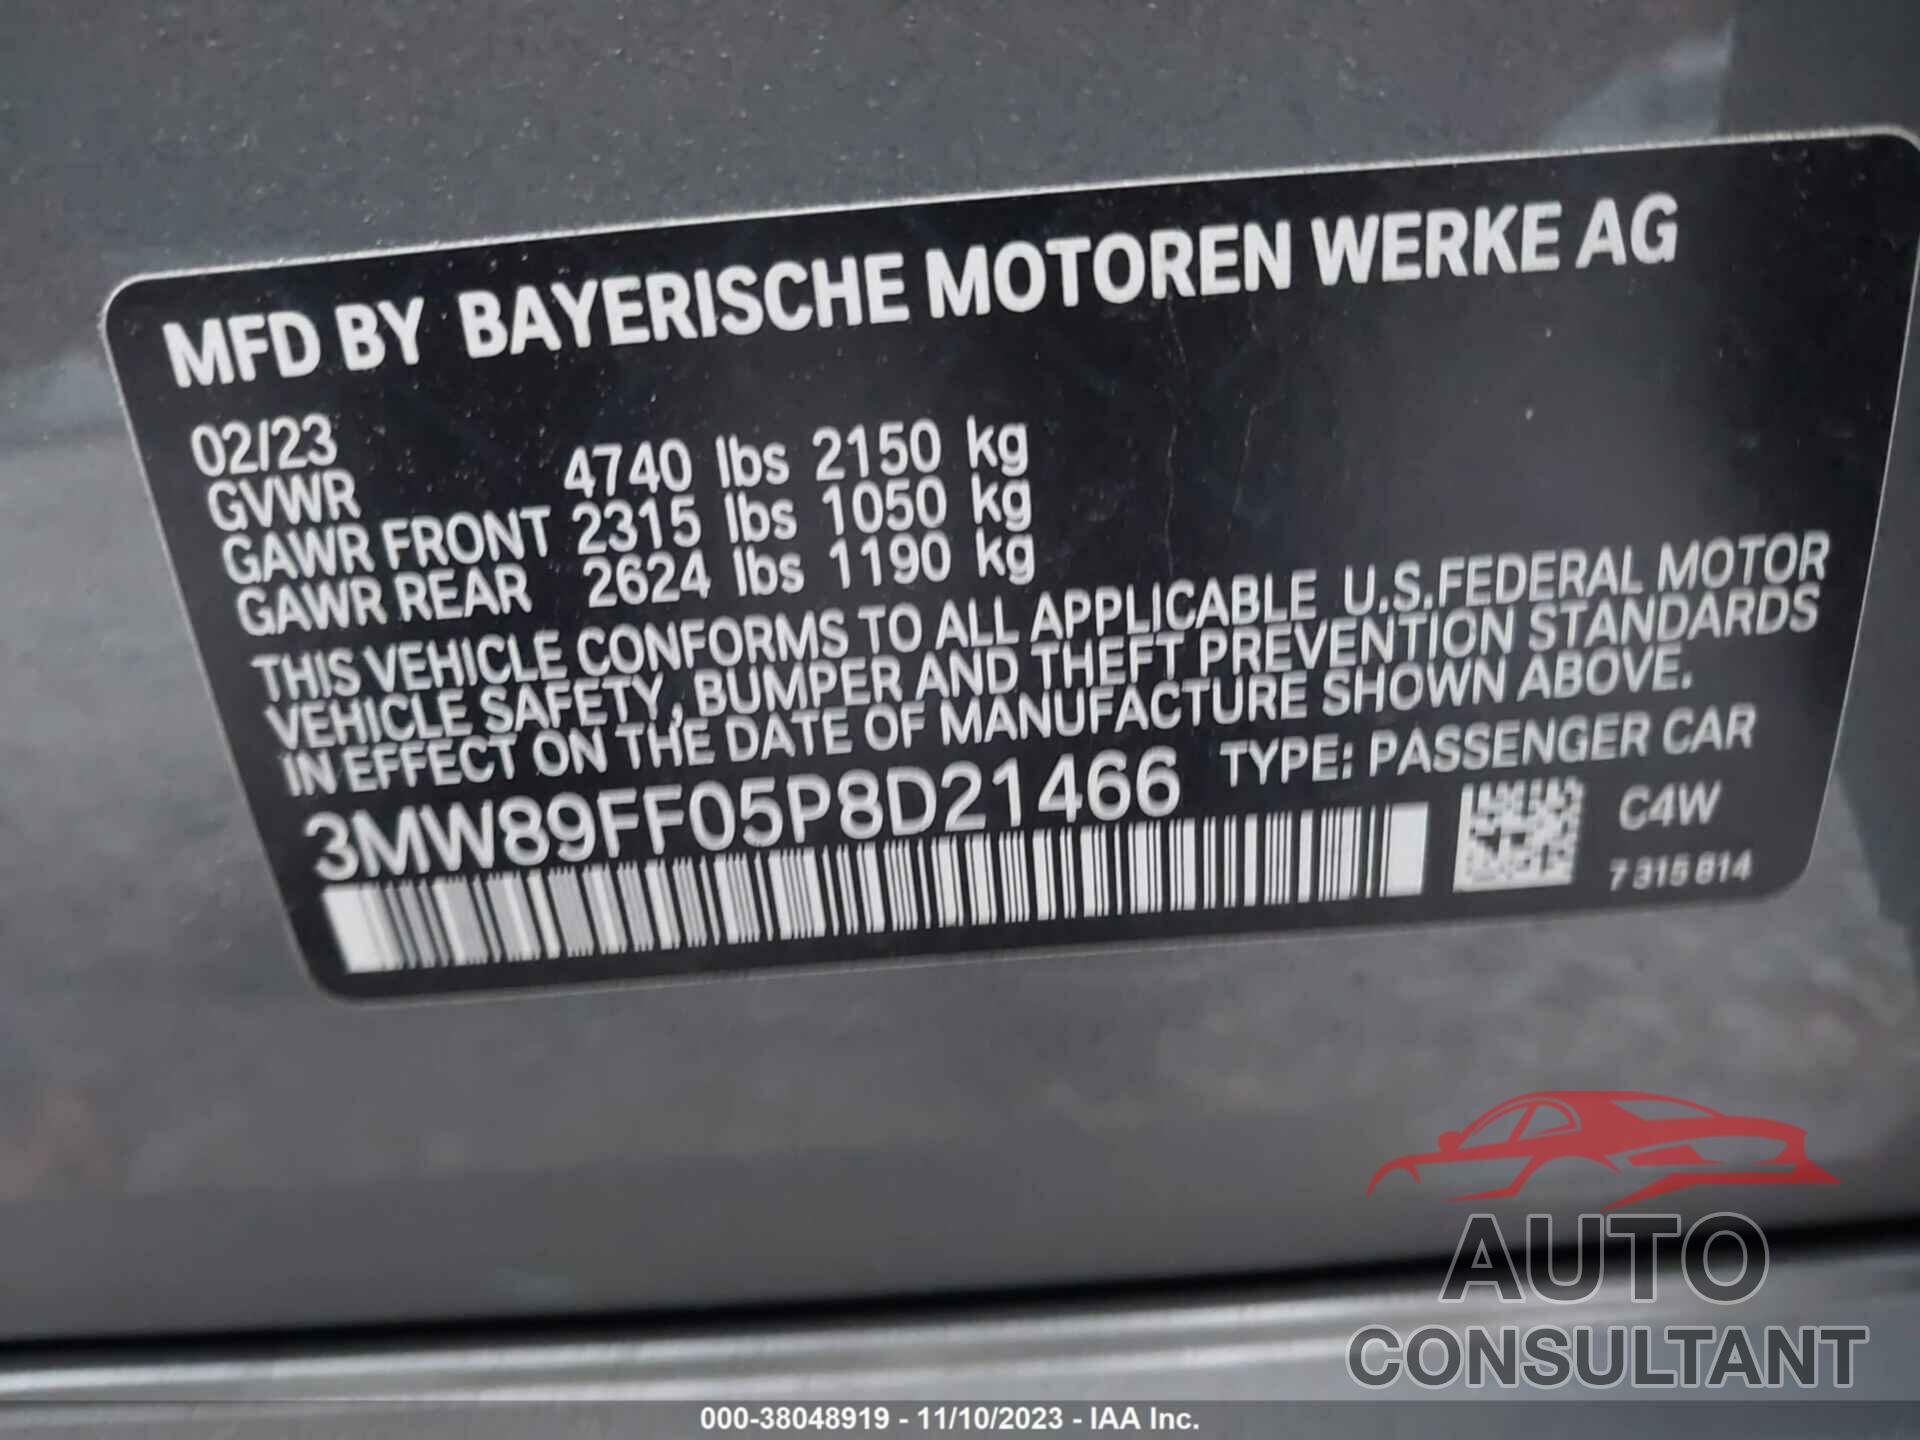 BMW 330I 2023 - 3MW89FF05P8D21466